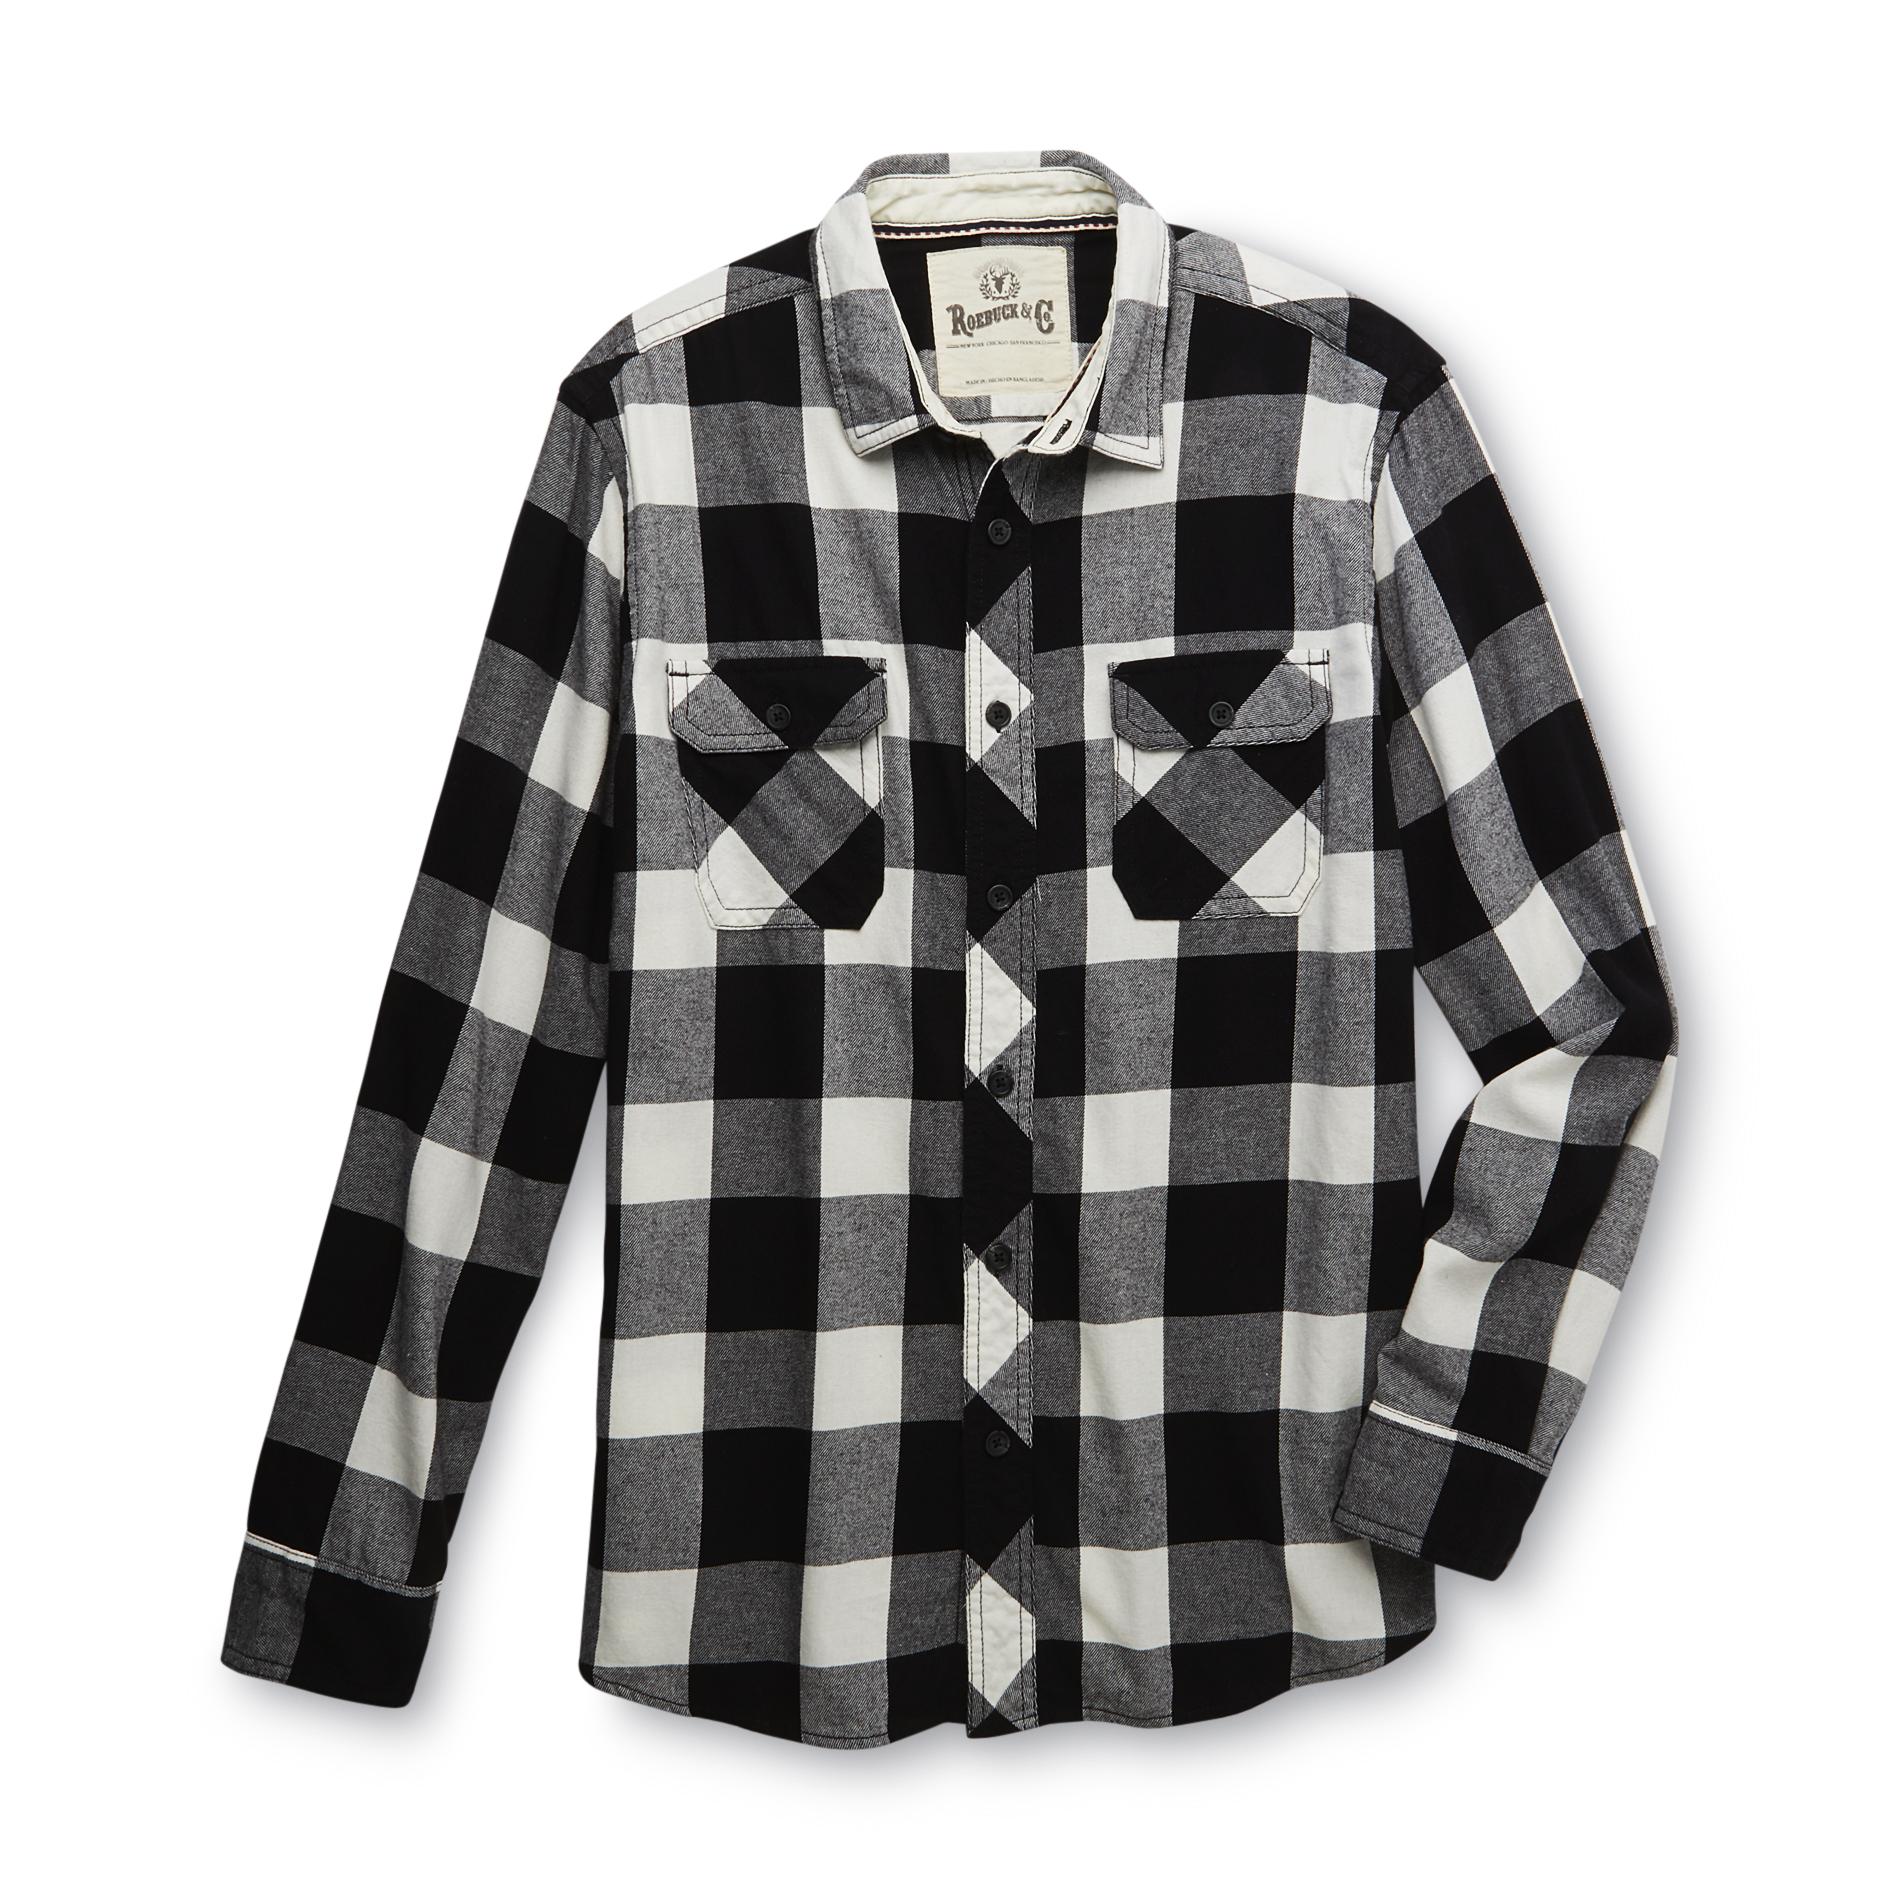 Roebuck & Co. Young Men's Flannel Shirt - Buffalo Plaid